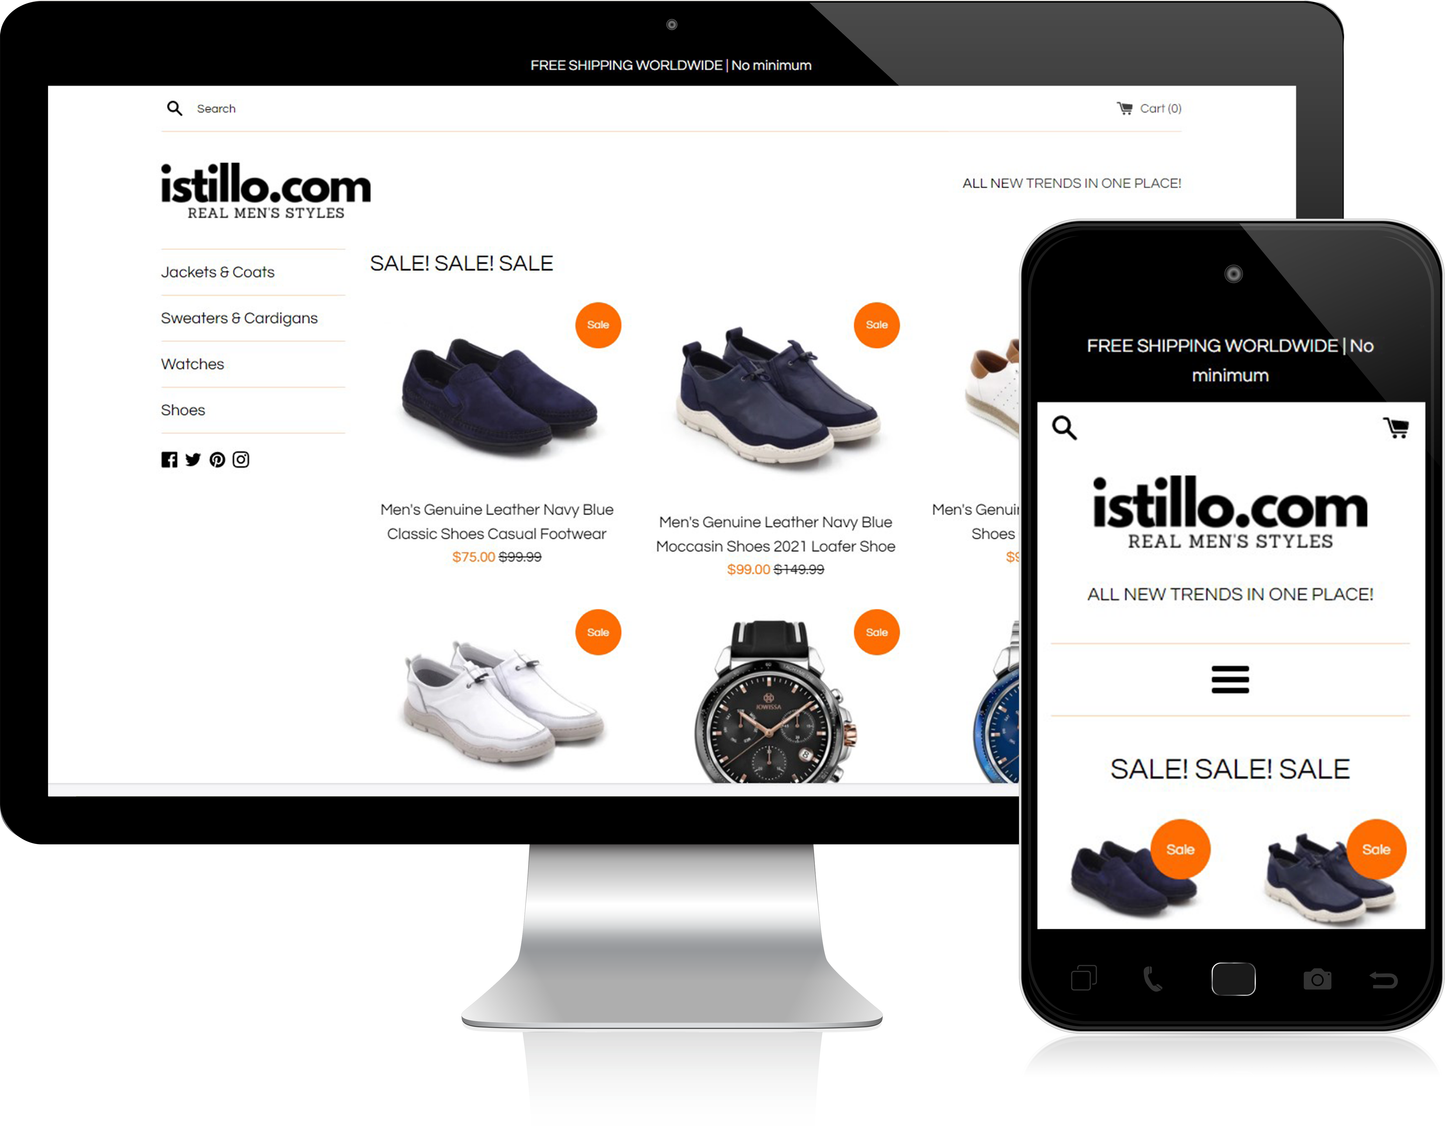 Istillo.com